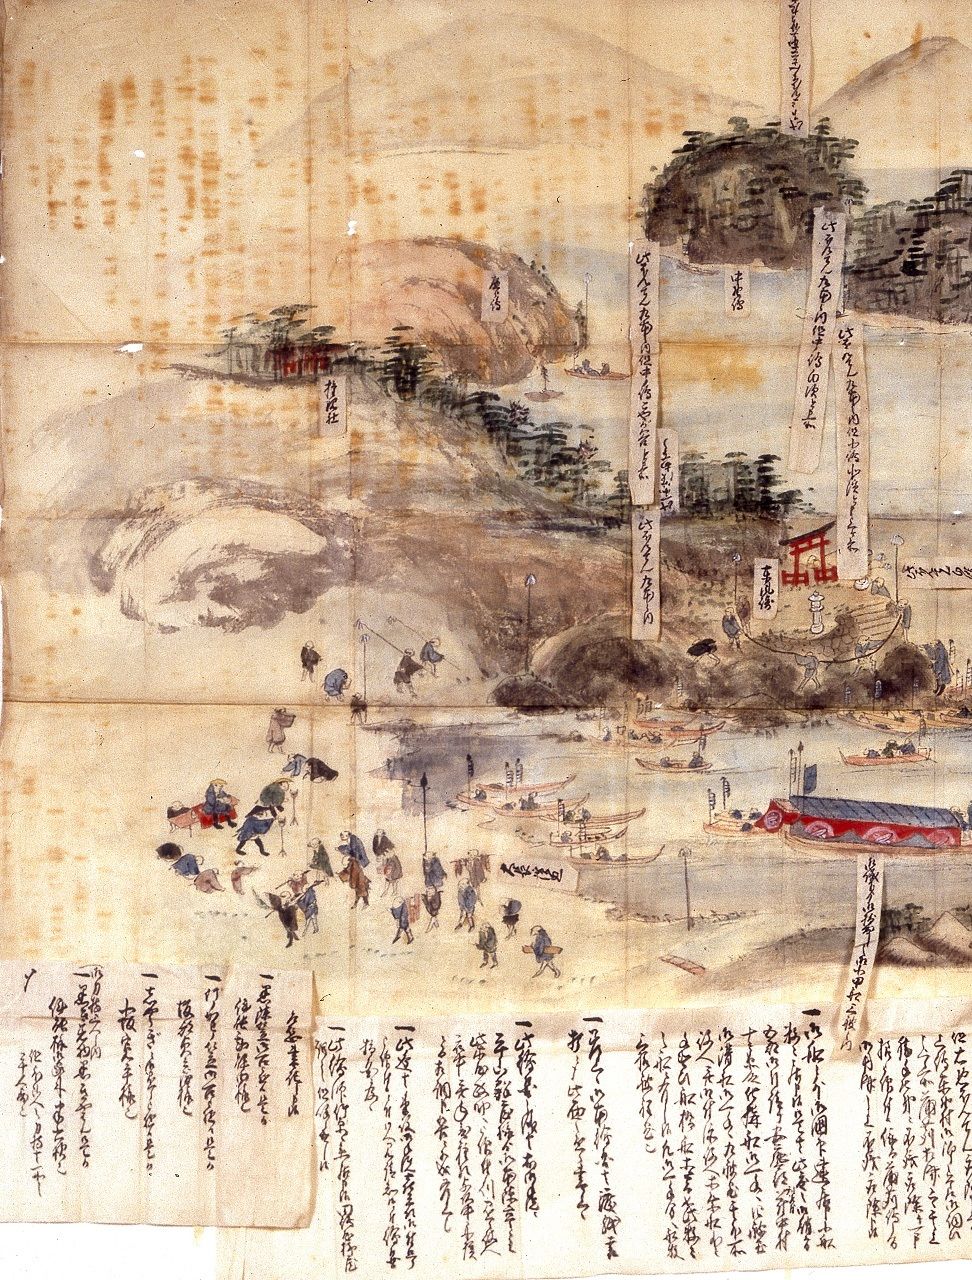 رسم إينو وفريقه من المساحين الجغرافيين في عام 1806 الميناء في منطقة ميتاراي بجزيرة أوساكي شيموجيما في الوقت الحالي كوري بمحافظة هيروشيما (الصورة بإذن من مدينة كوري).